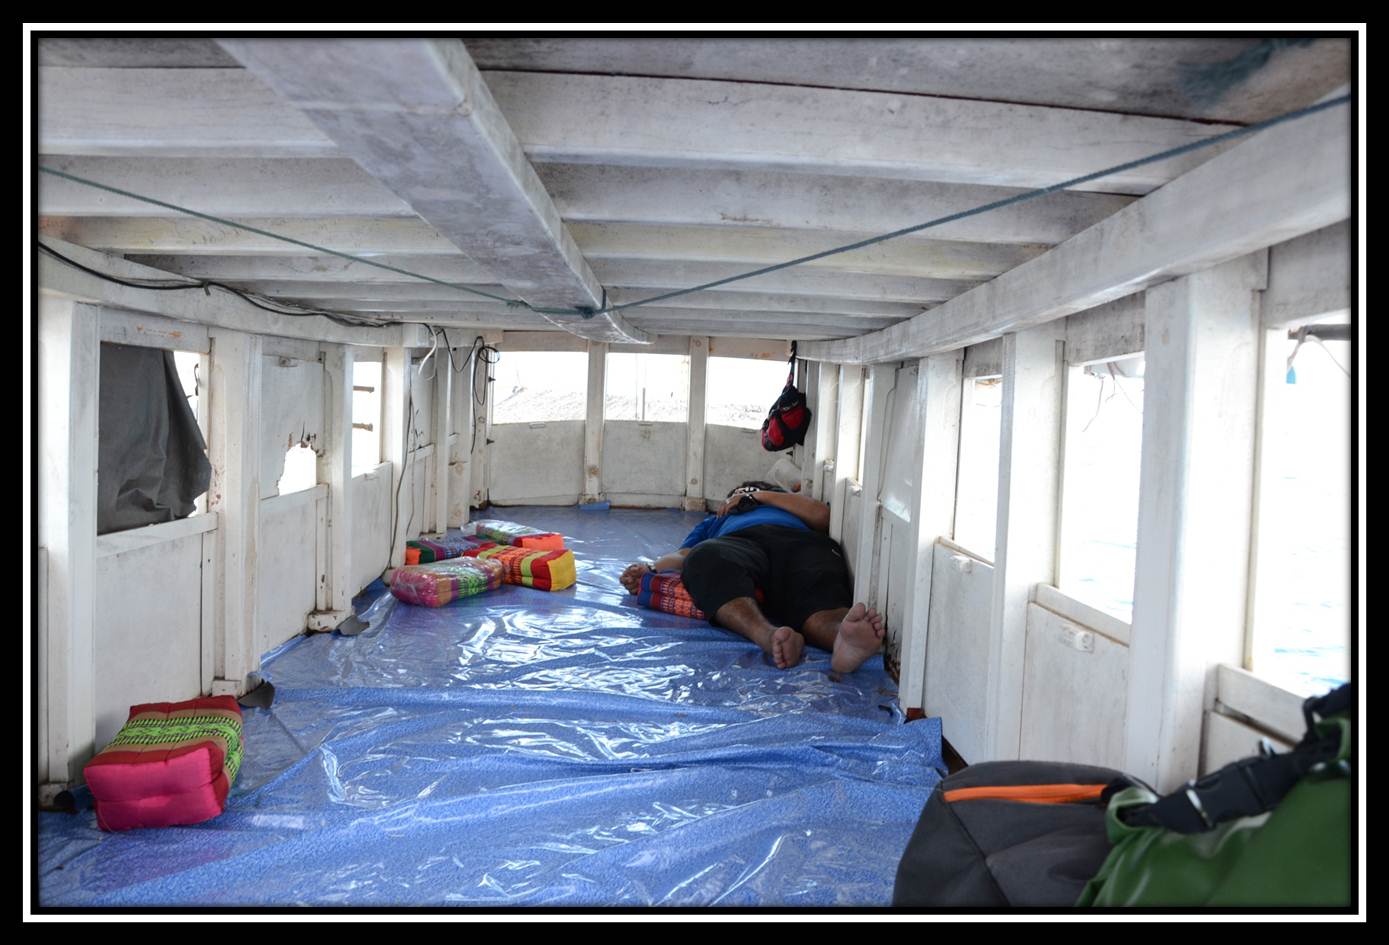 สภาพห้องนอนภายในเก๋งเรือครับ นอนพักผ่อนได้หลายคนครับ ทีมเราไปกันแค่ 4 คนโอ่โถงน่าดูเลยครับ :laughing